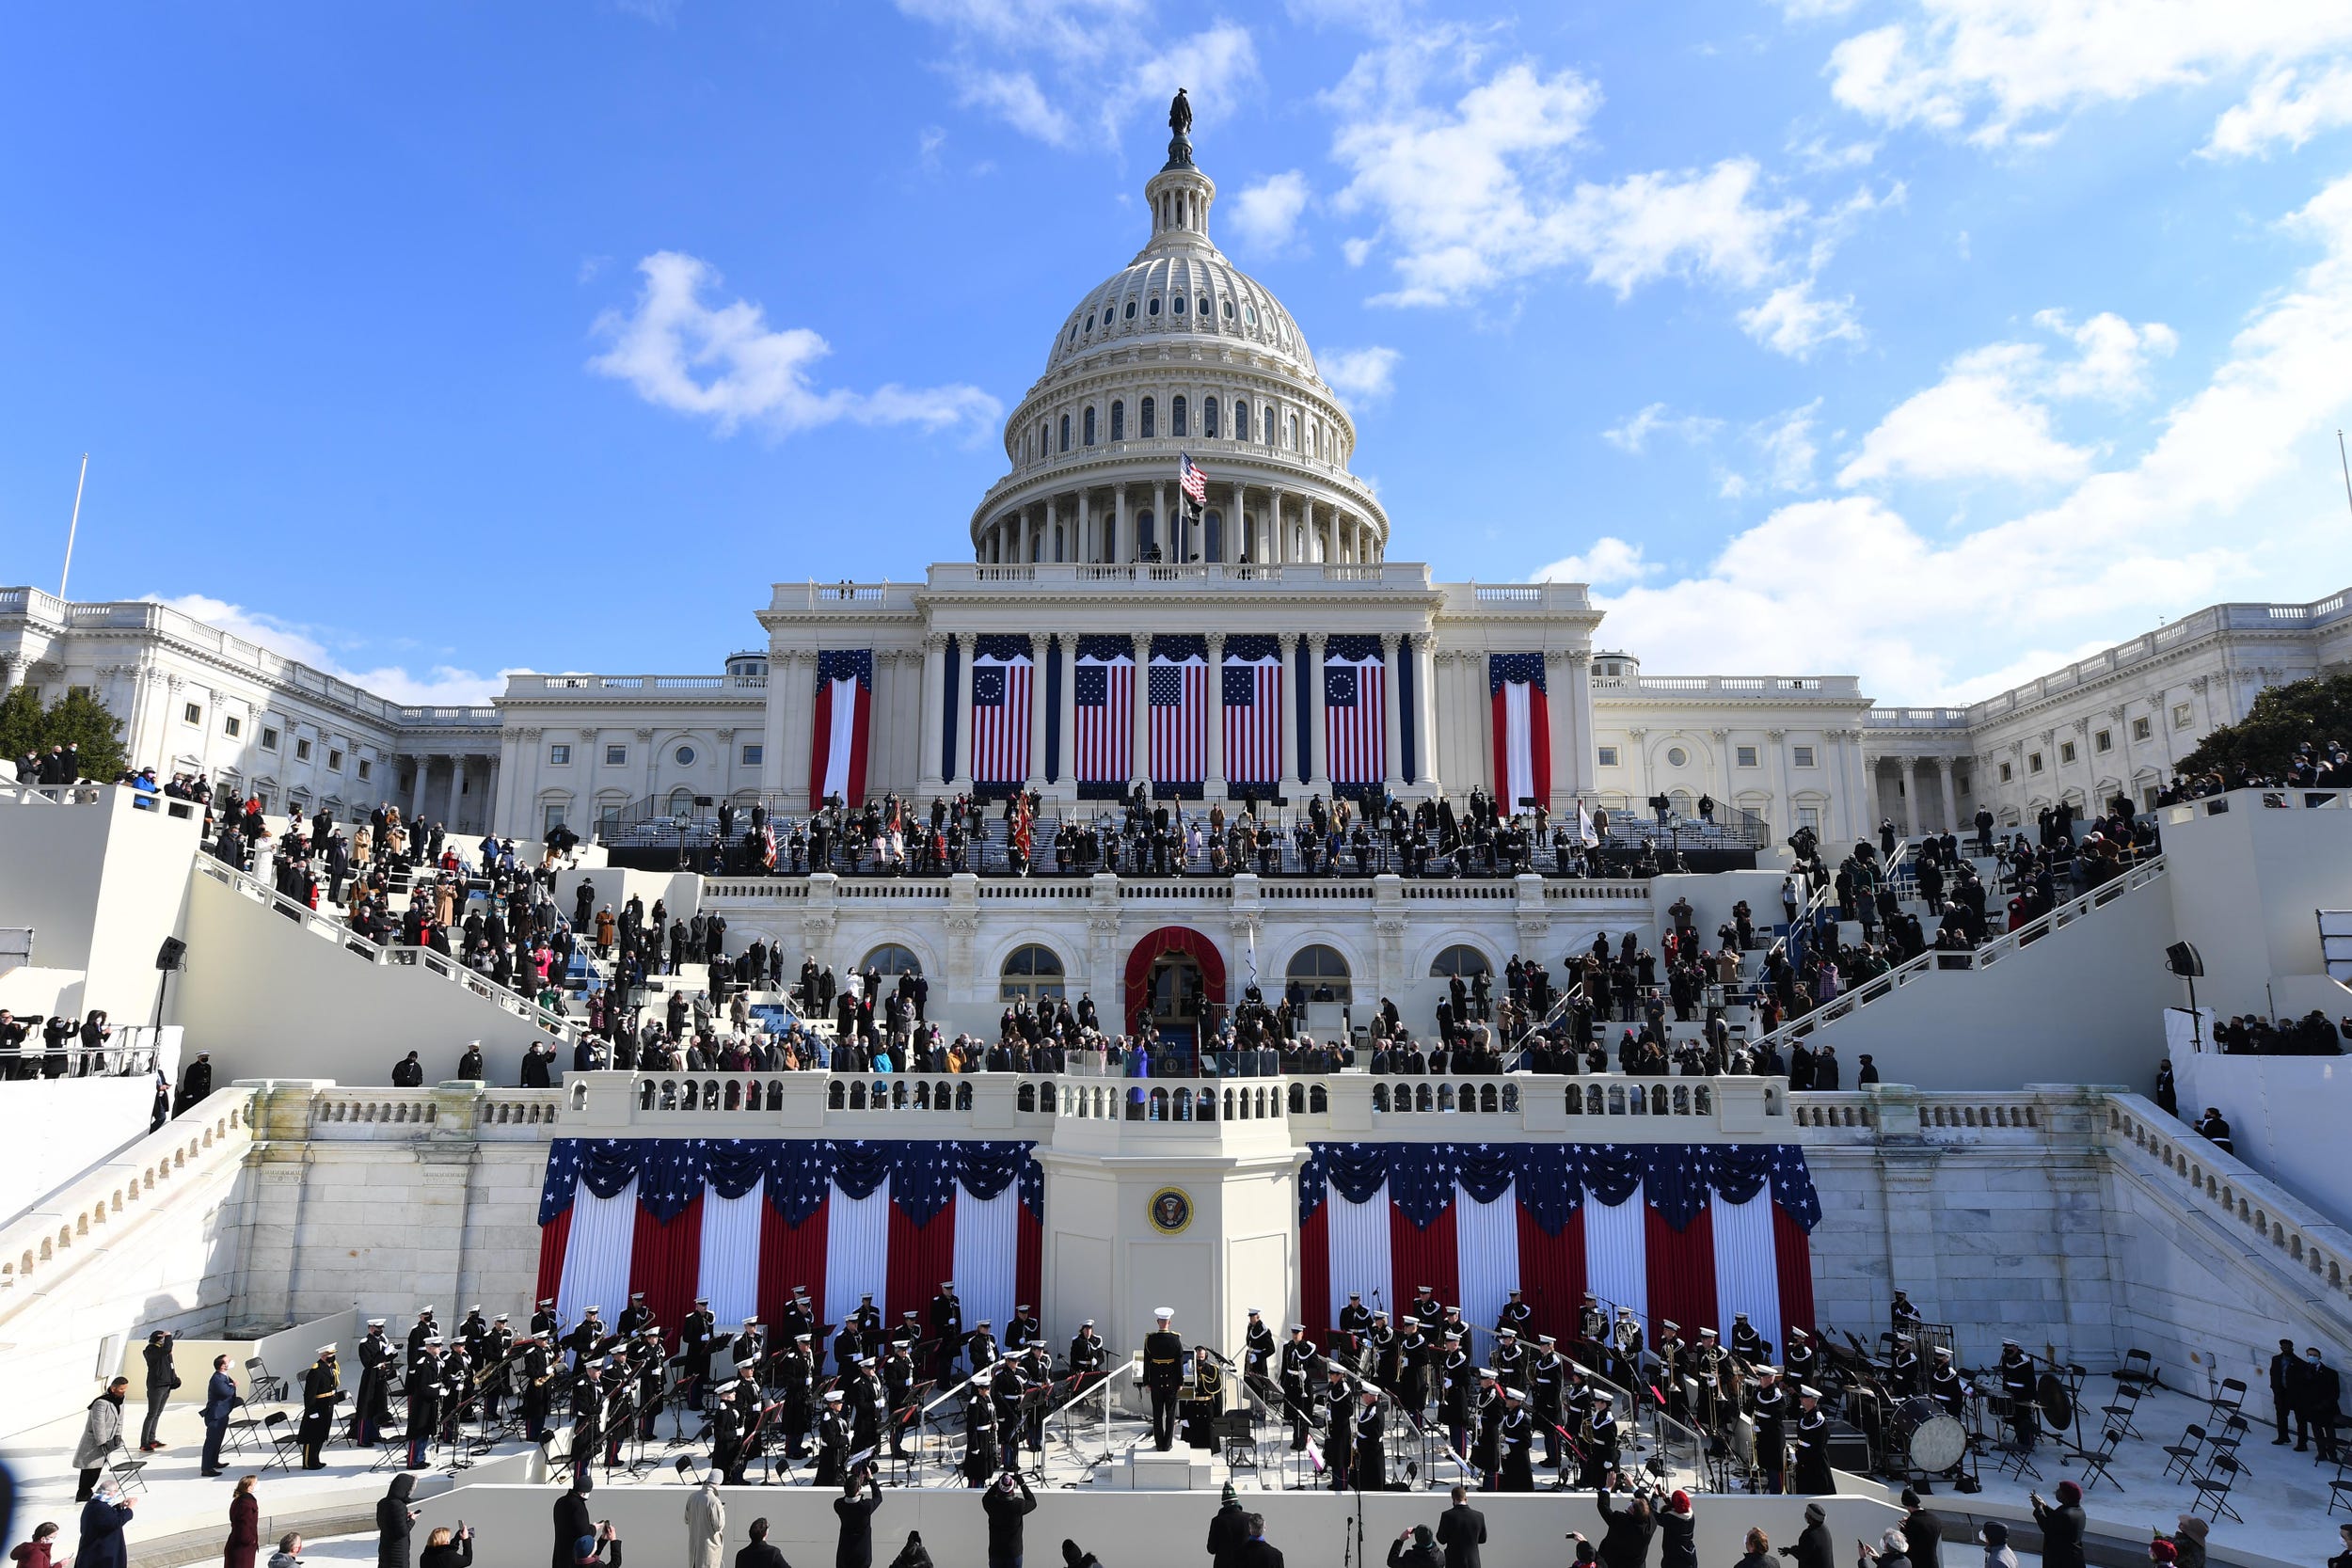 Inauguration Day Photos Historic Images Capture Mood Of Washington 6966